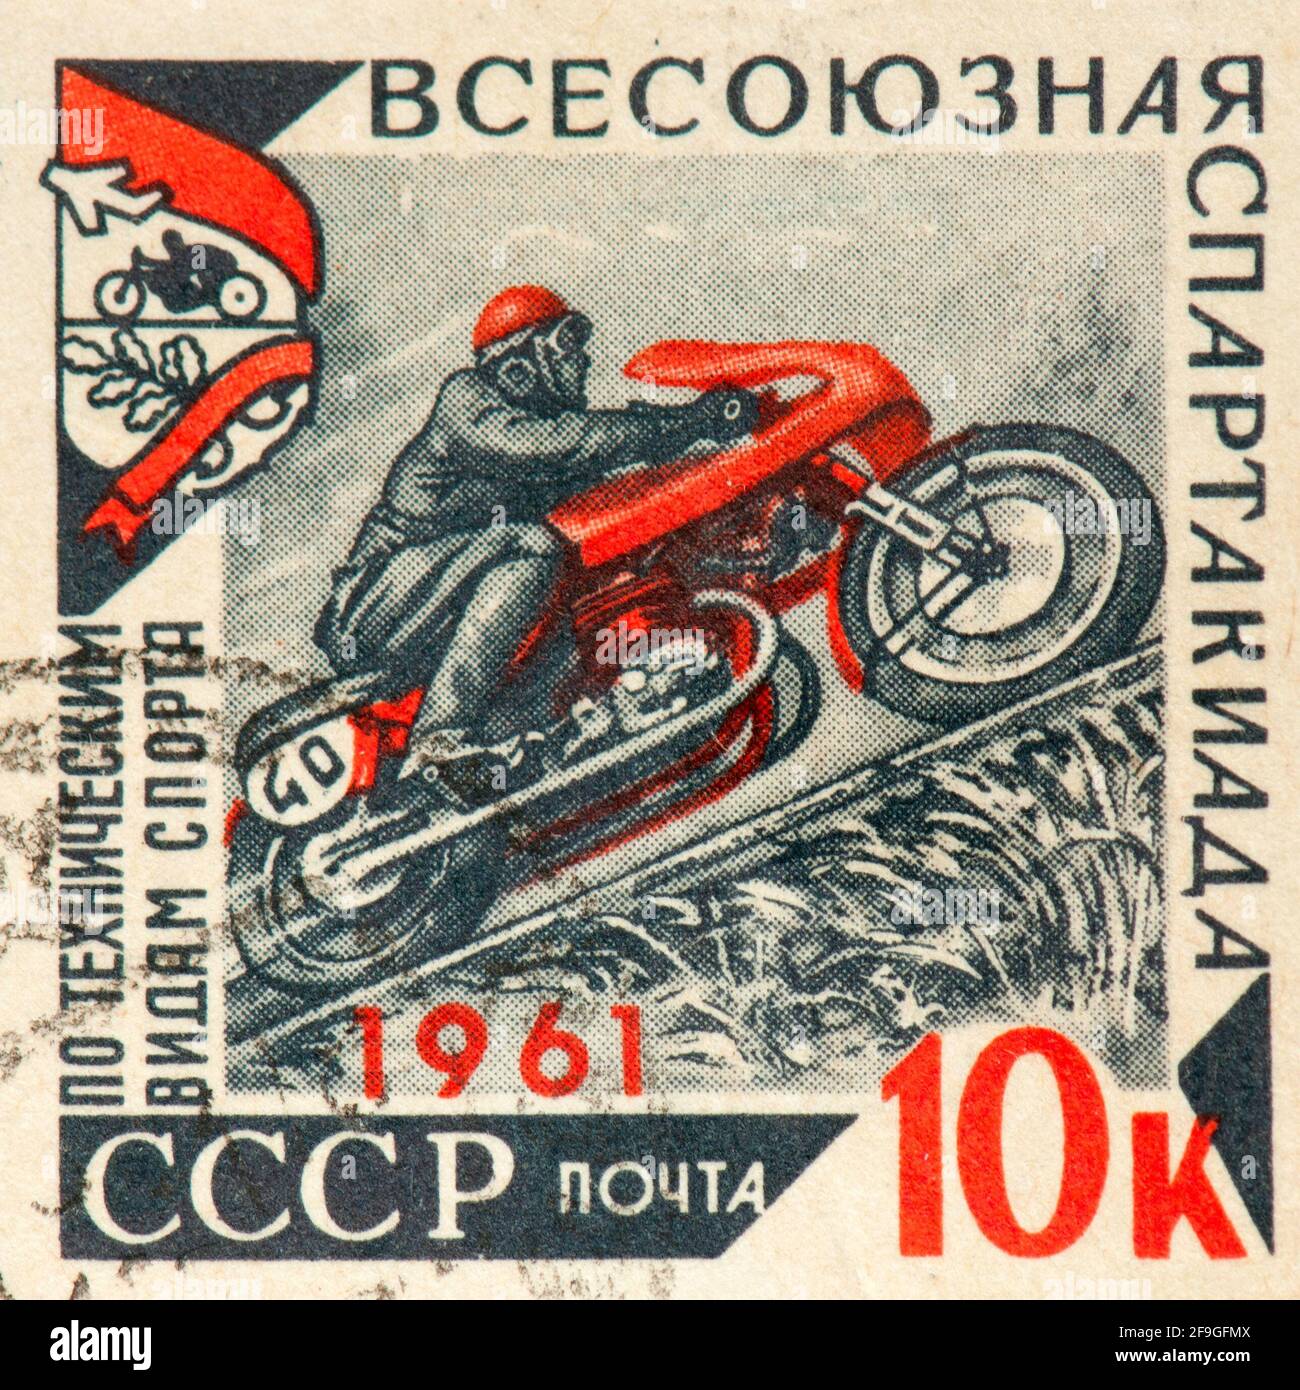 Timbre commémoratif de la course de motocycle pendant l'ère soviétique Banque D'Images